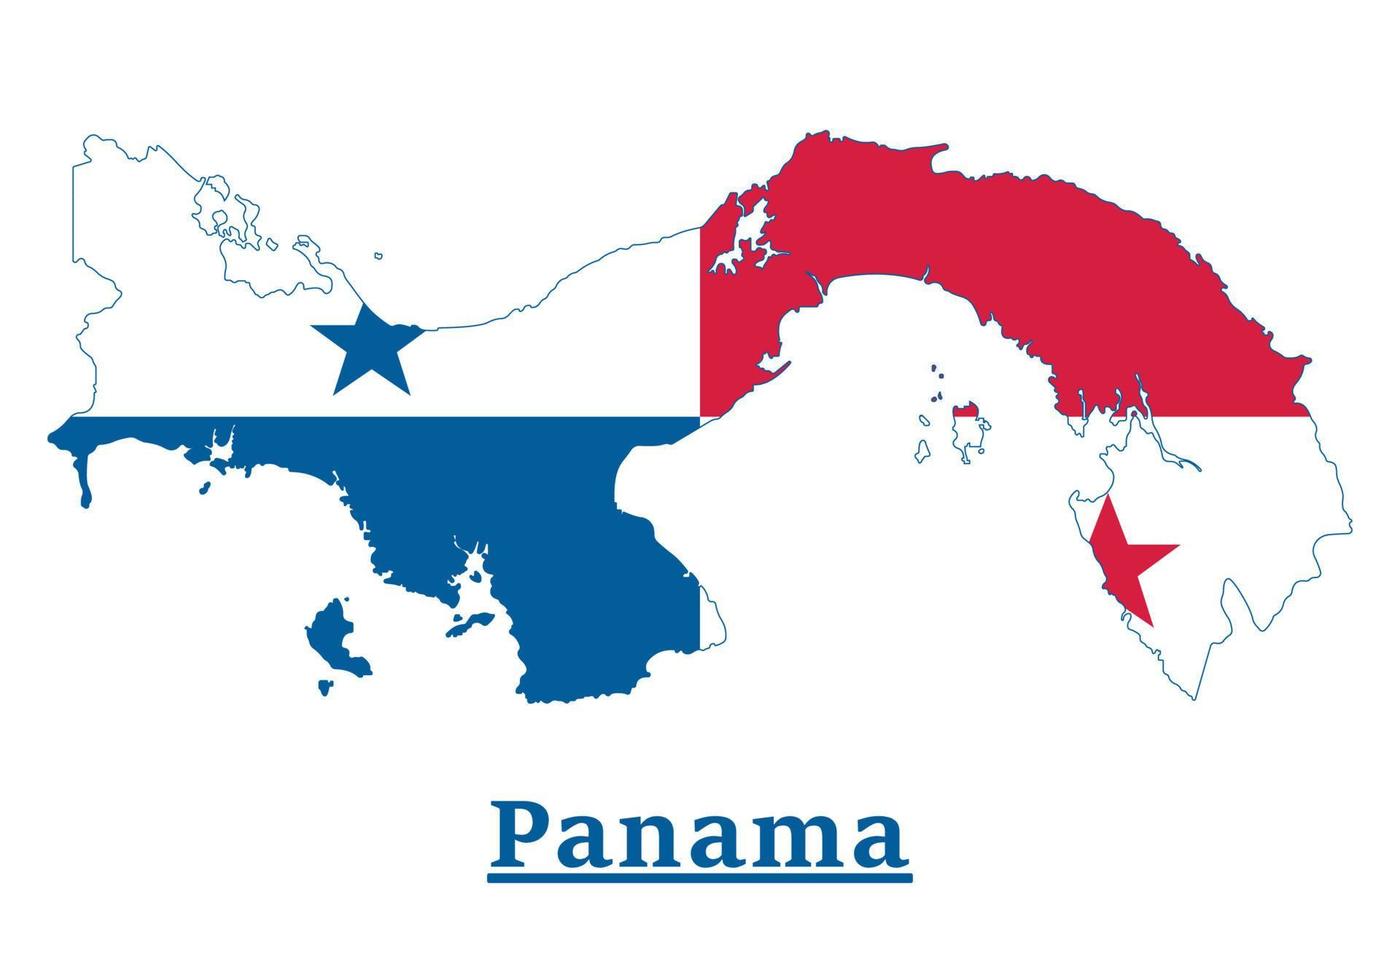 Panama nationaal vlag kaart ontwerp, illustratie van Panama land vlag binnen de kaart vector